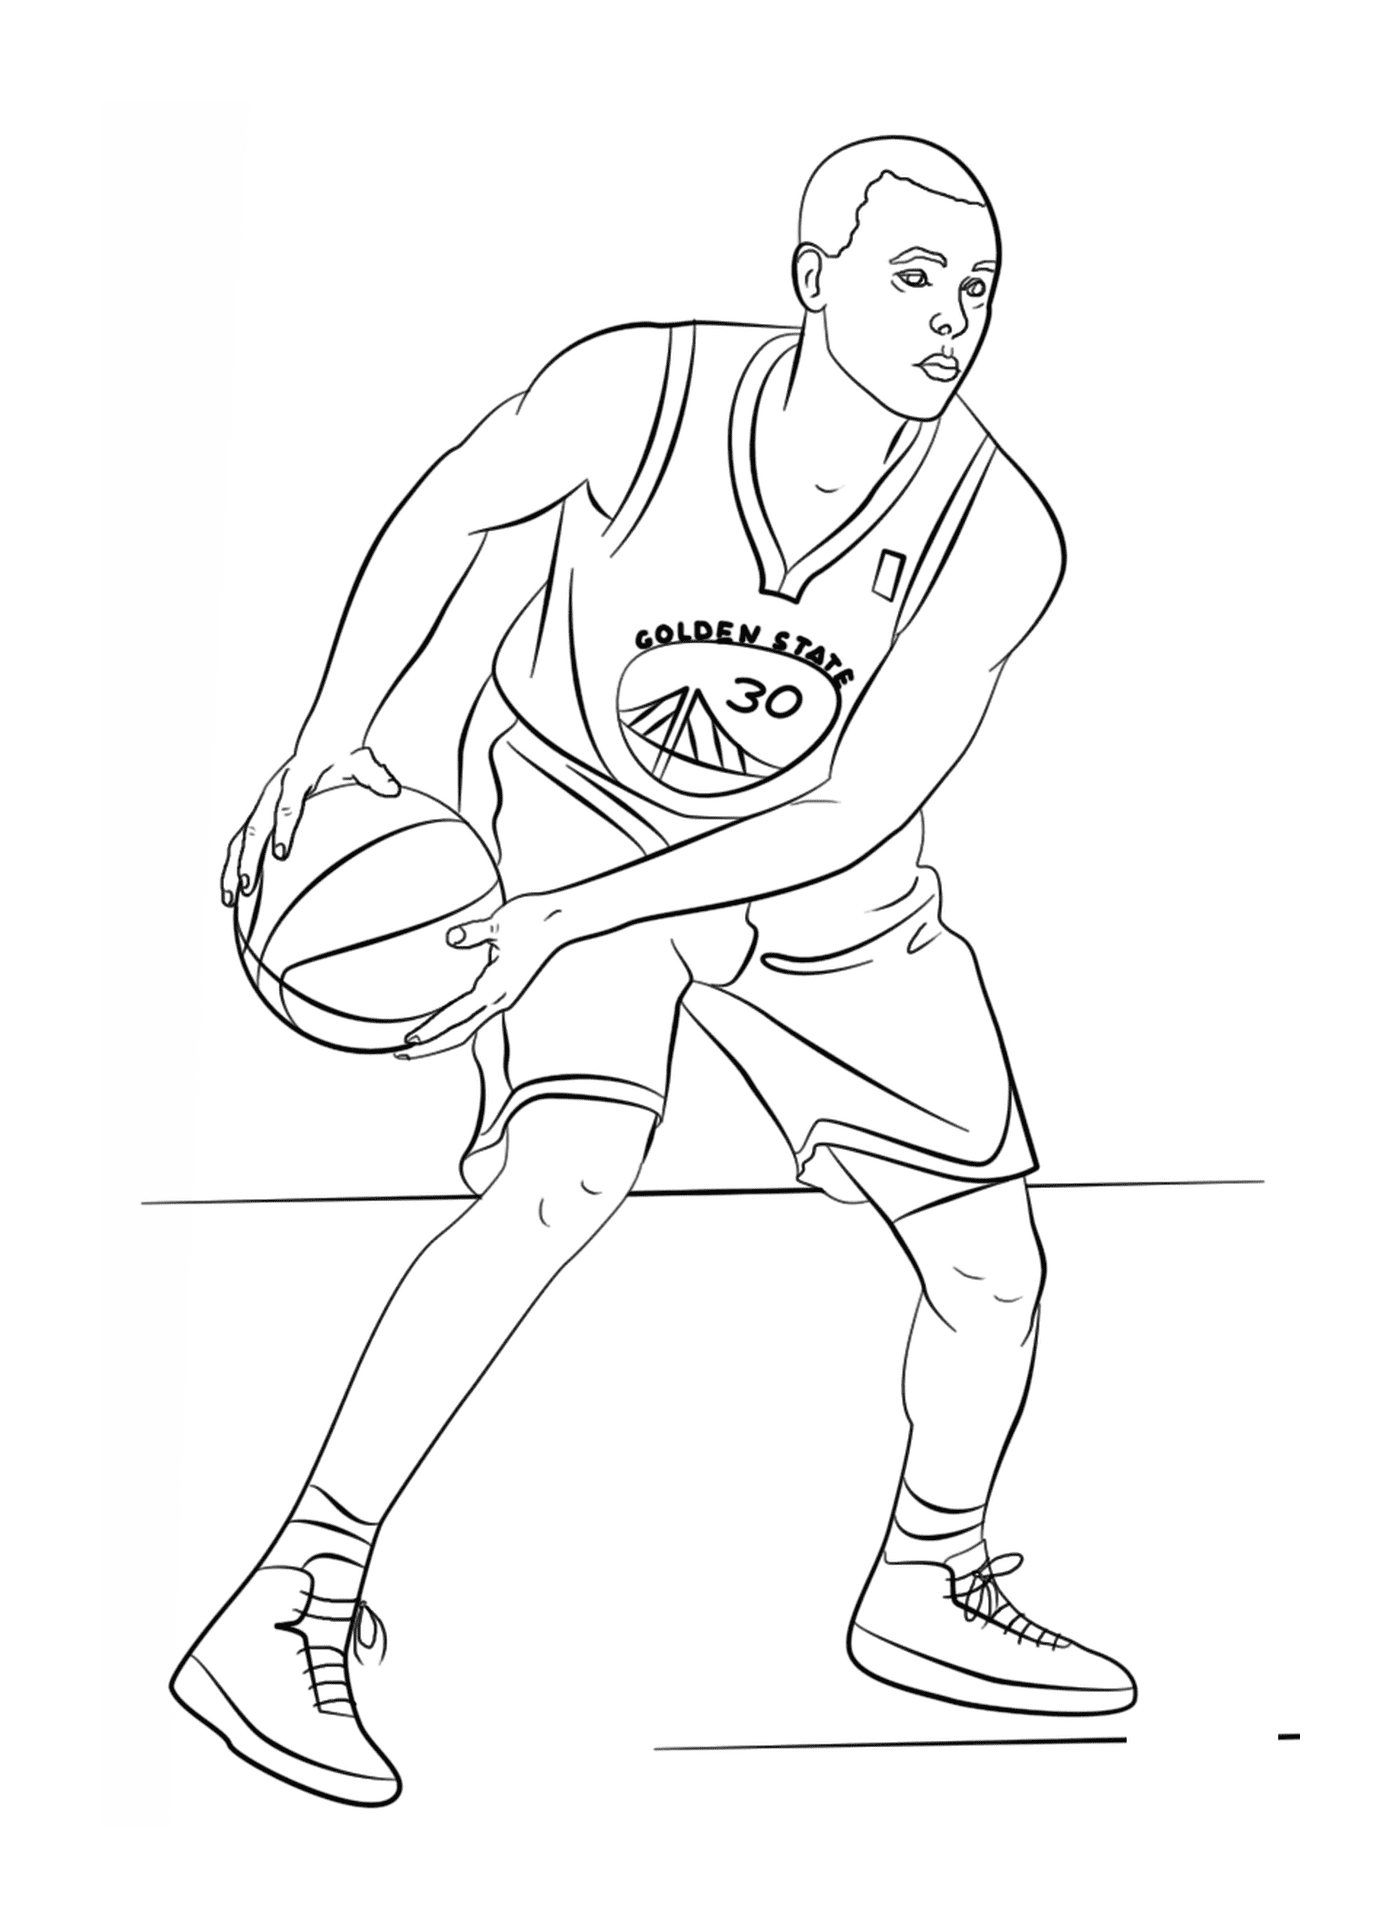  Stephen Curry, jugador de baloncesto de la NBA 